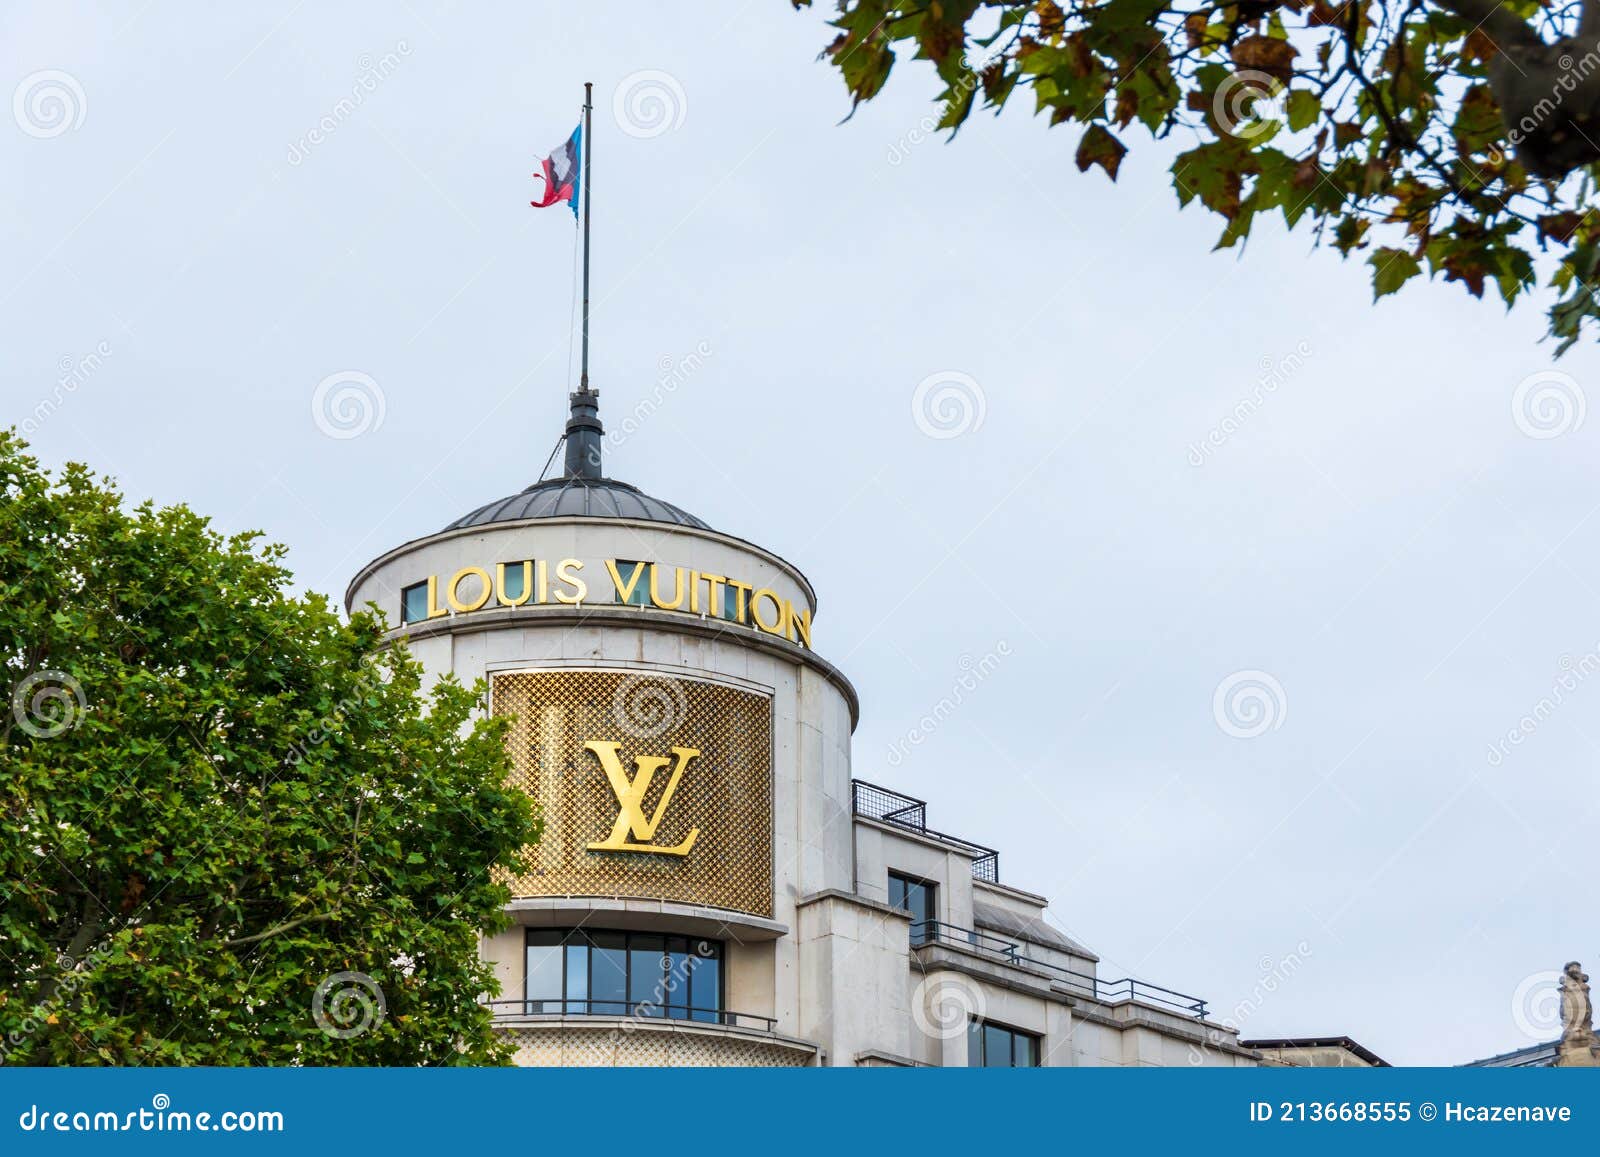 Paris France August 15 2020 Louis Vuitton Building On The Avenue